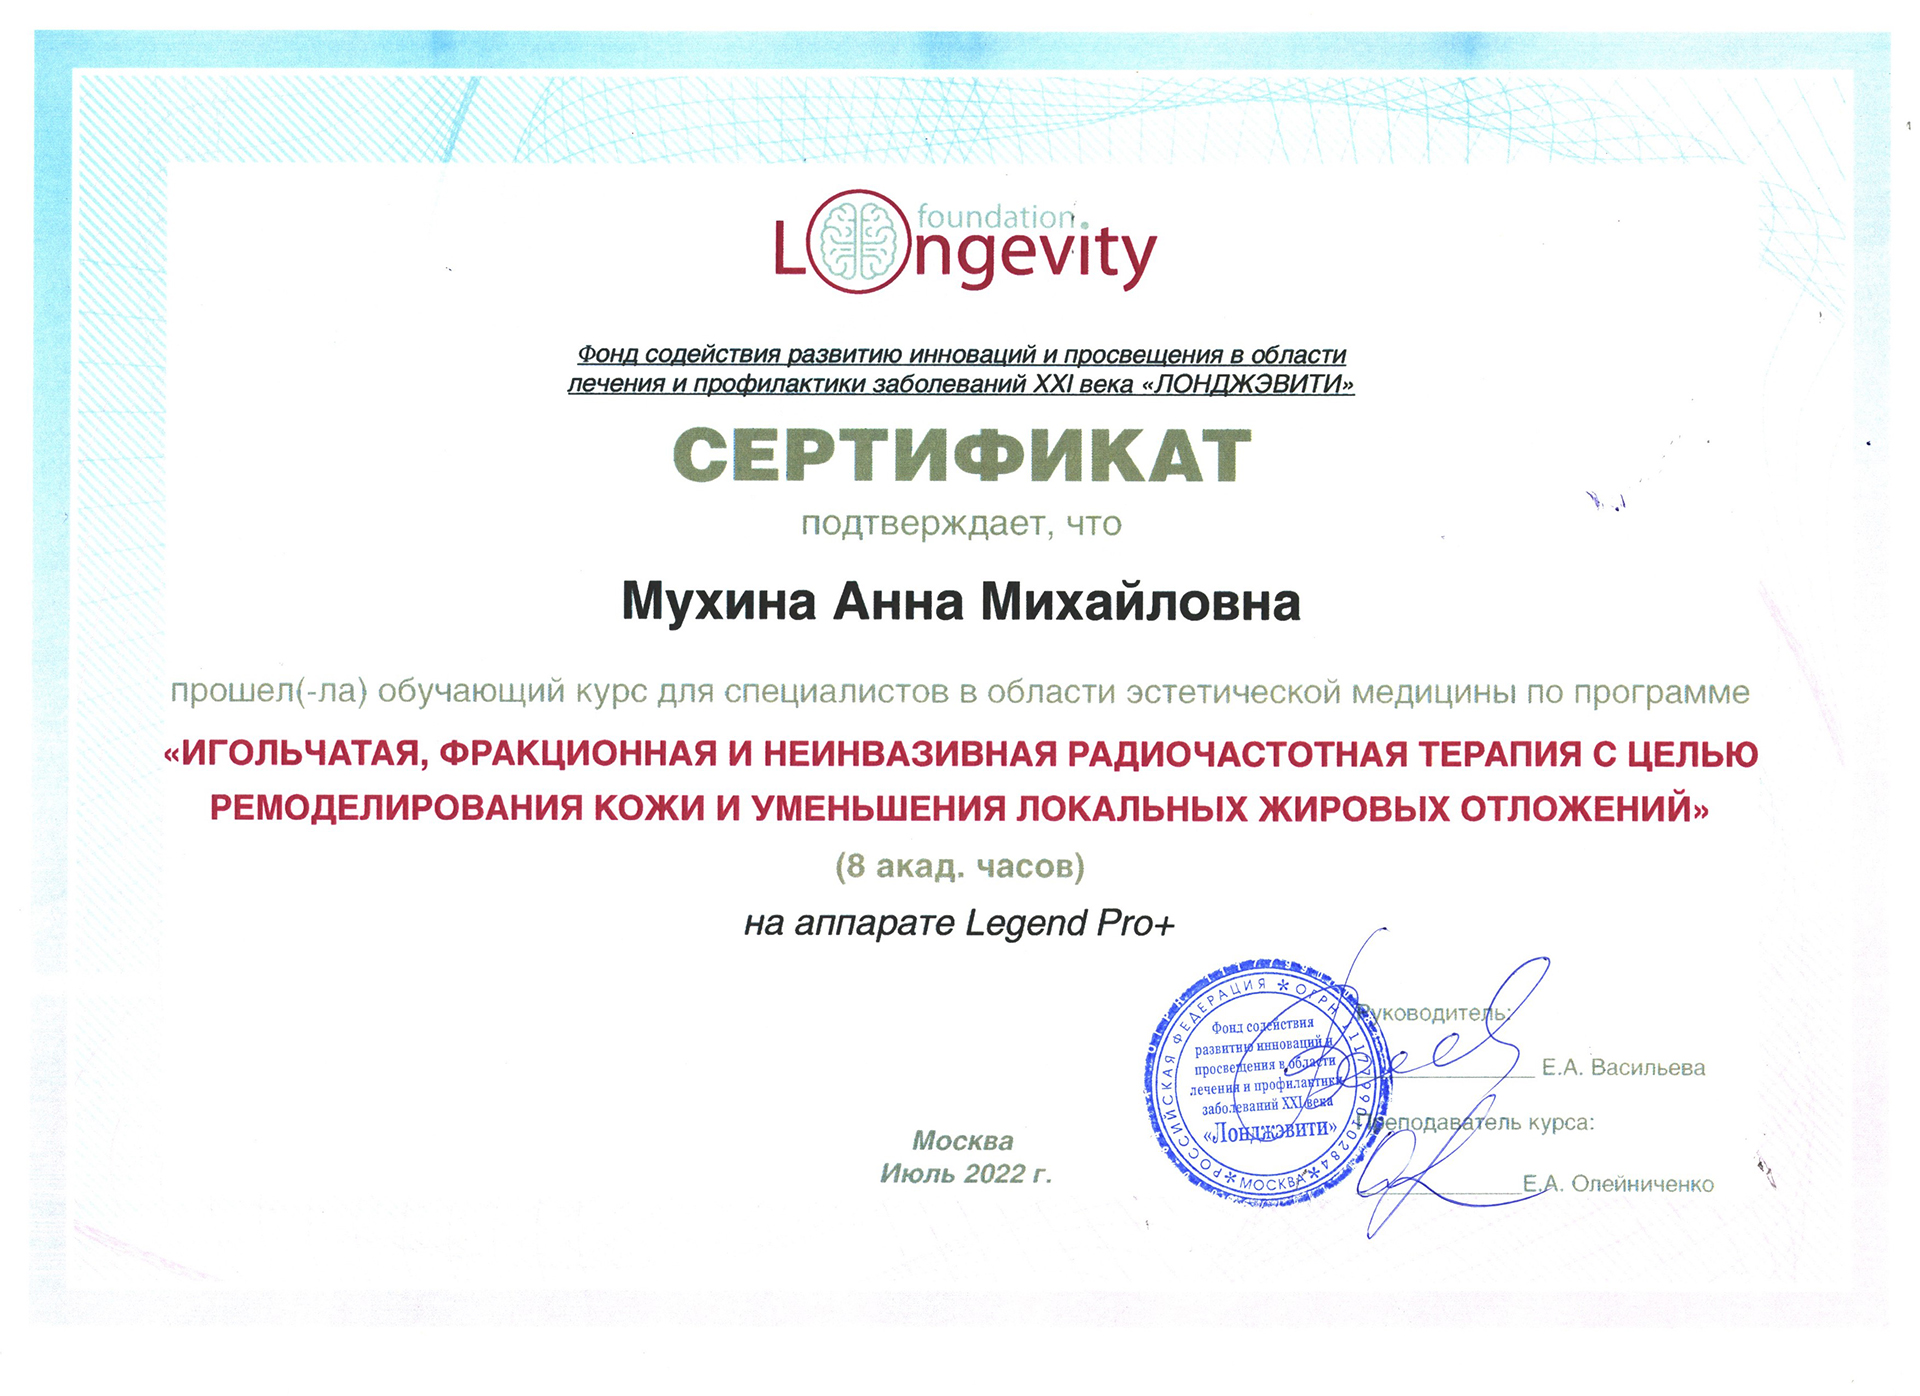 Сертификат — Программа «Игольчатая, фракционная и неинвазивная радиочастотная терапия». Мухина Анна Михайловна